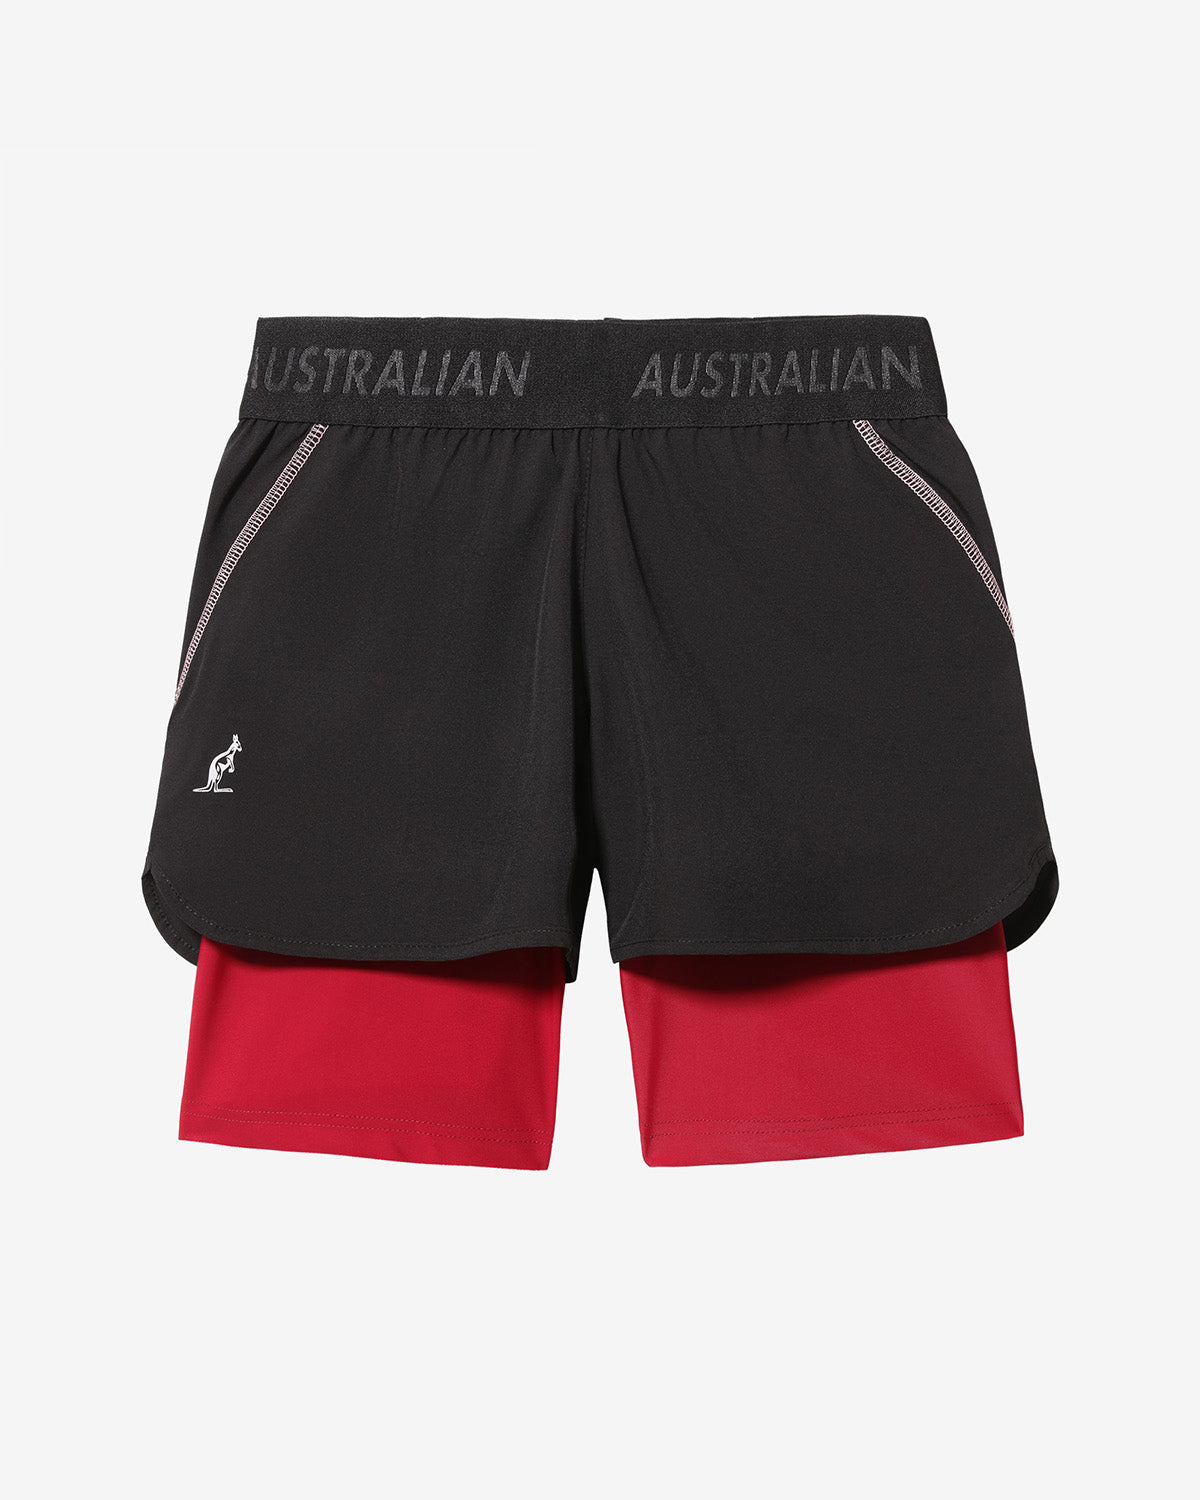 Match Shorts: Australian Tennis